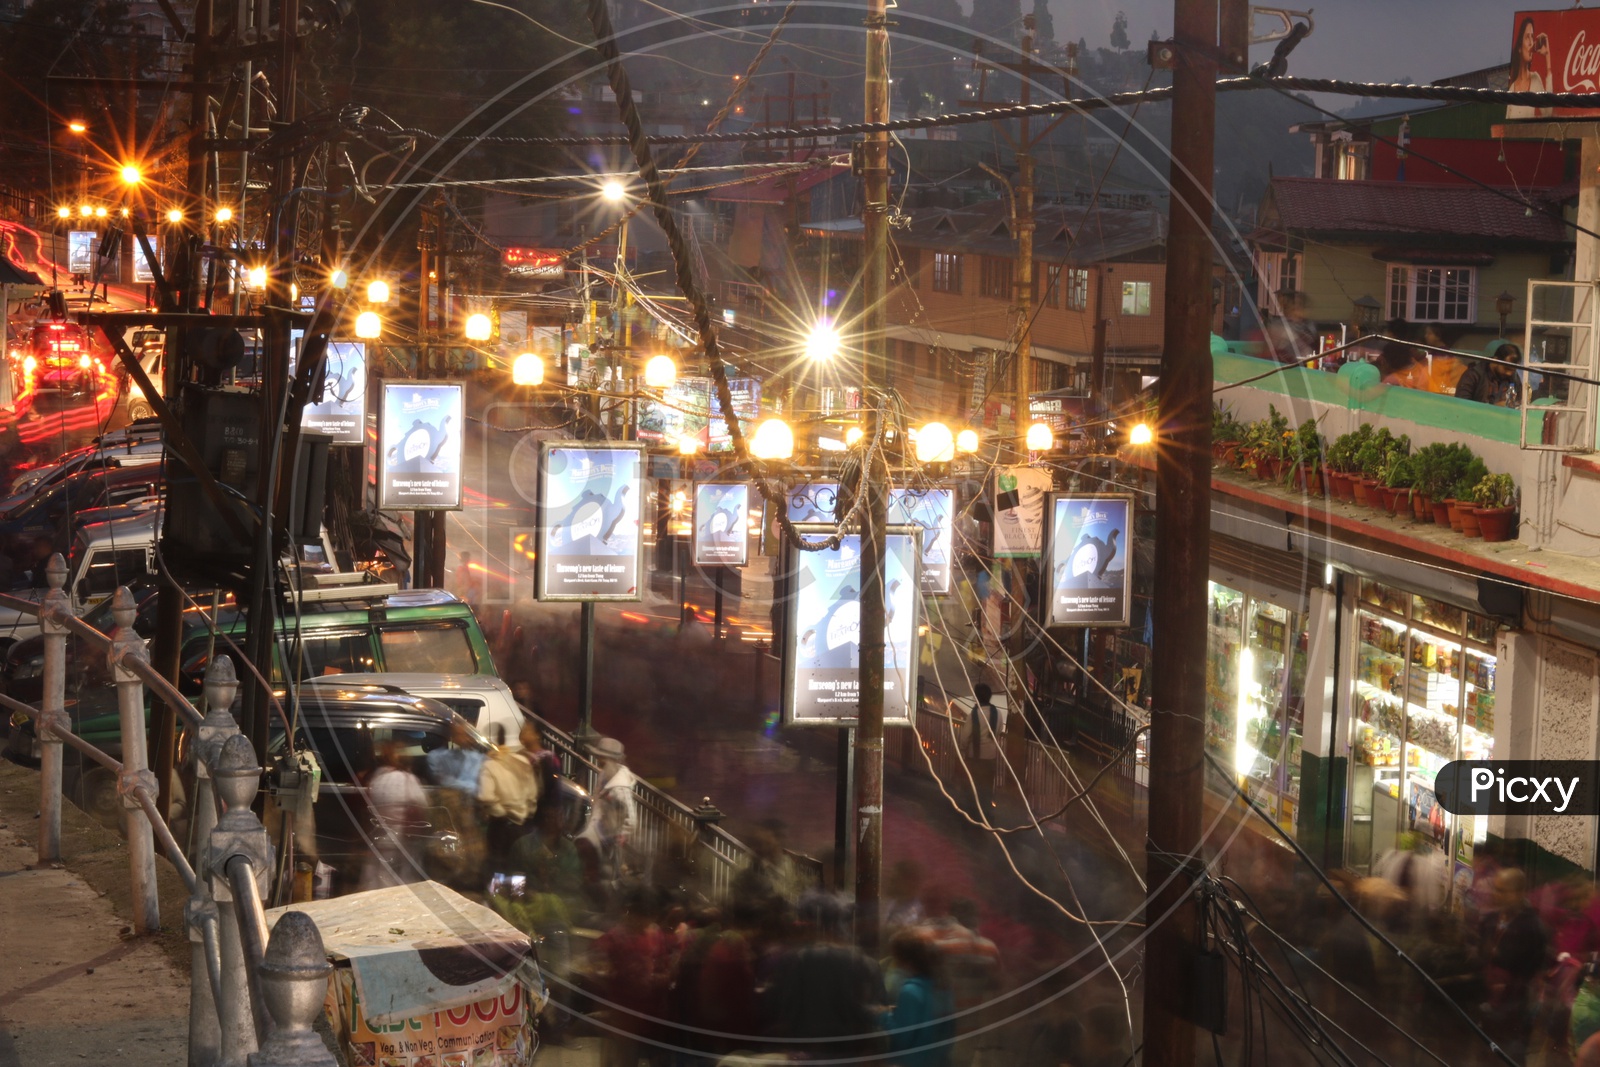 "Busy streets of Darjeeling "